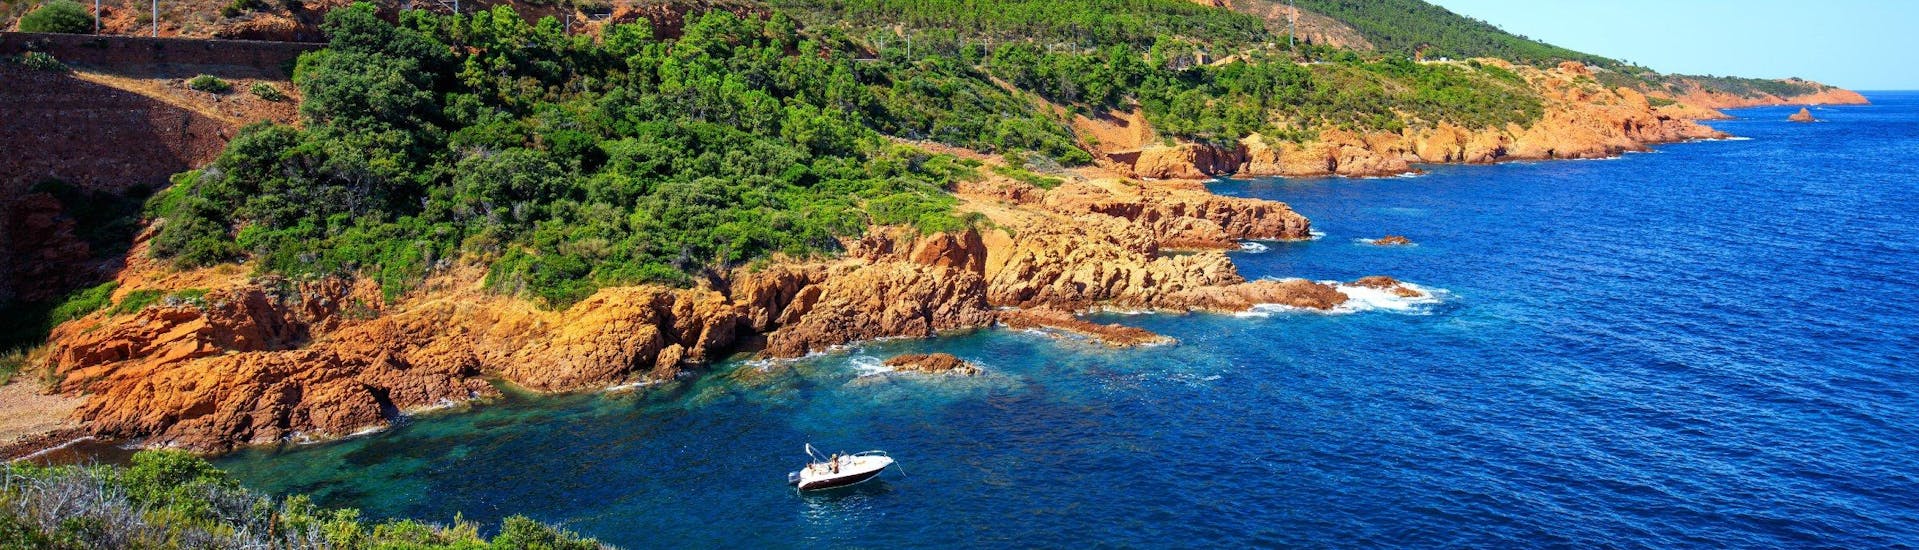 Un bateau navigue le long du littoral du parc naturel de l'Estérel, qui est une destination populaire pour les balades en bateau depuis Cannes.